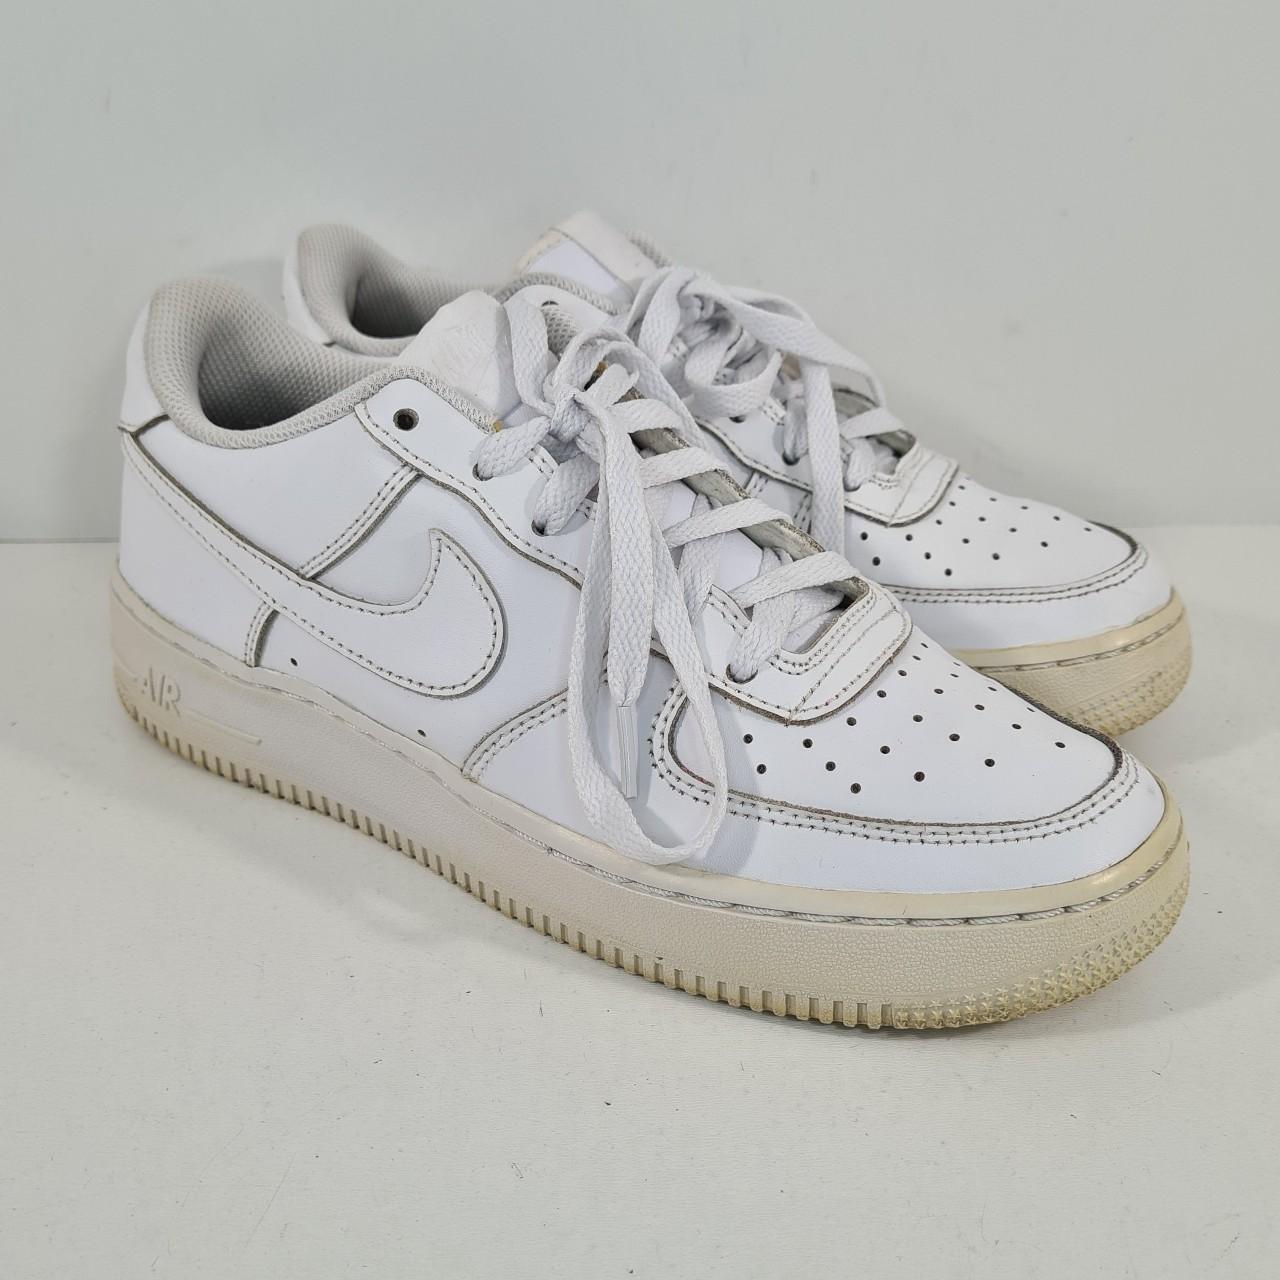 Nike Air Force 1 Low White Sneakers 314192-117 US... - Depop